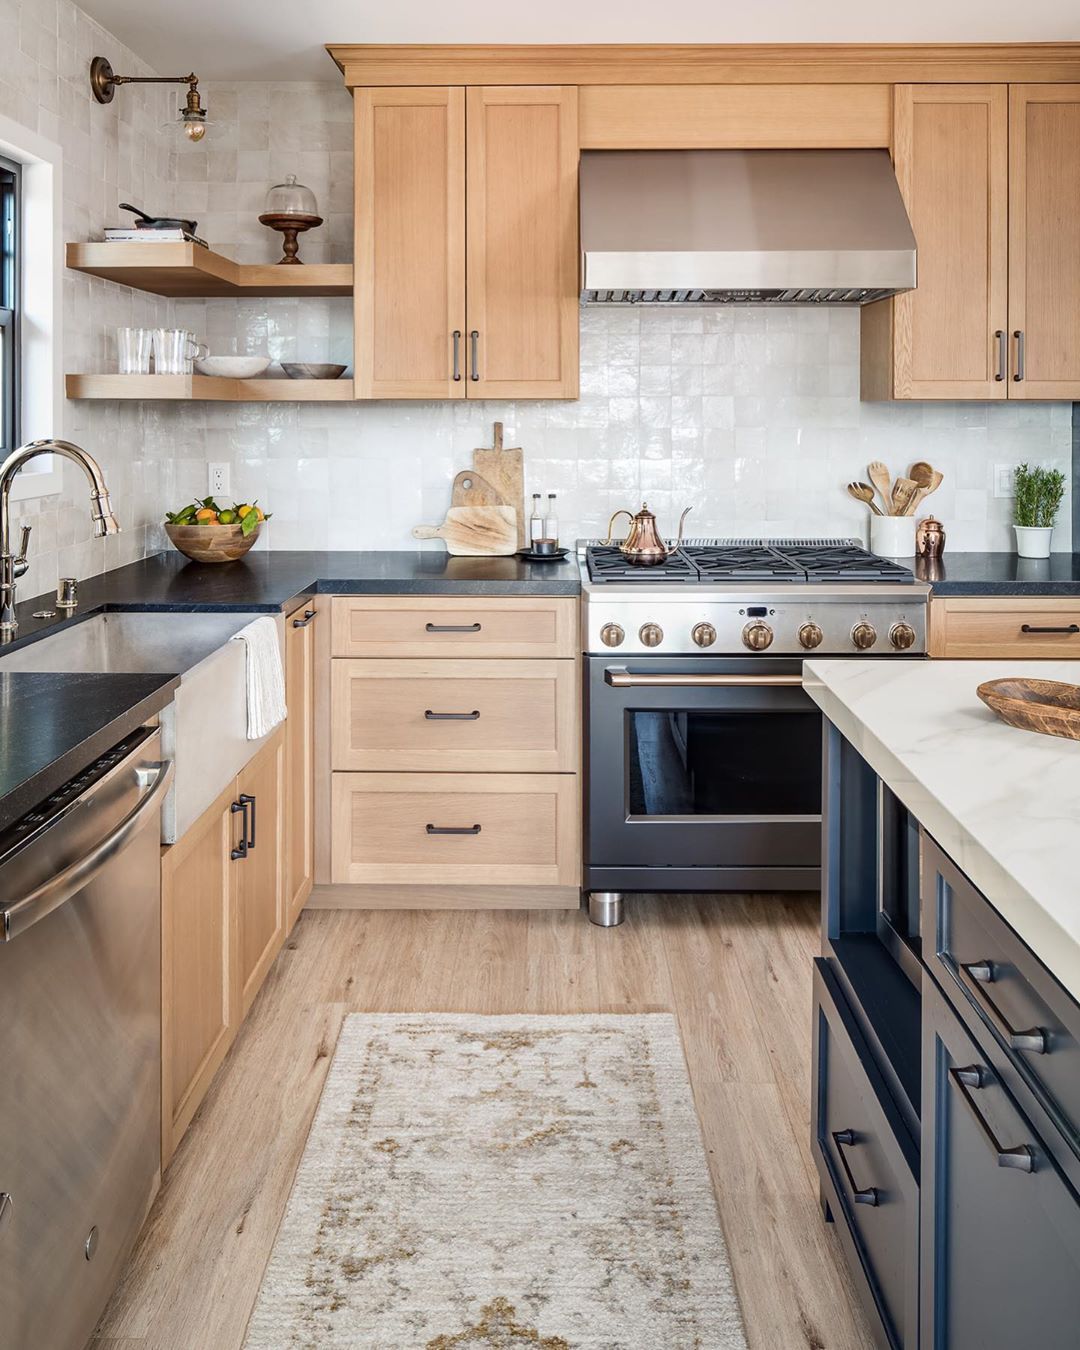 White Zellige Tile Kitchen Backsplash via @mprevostdesign